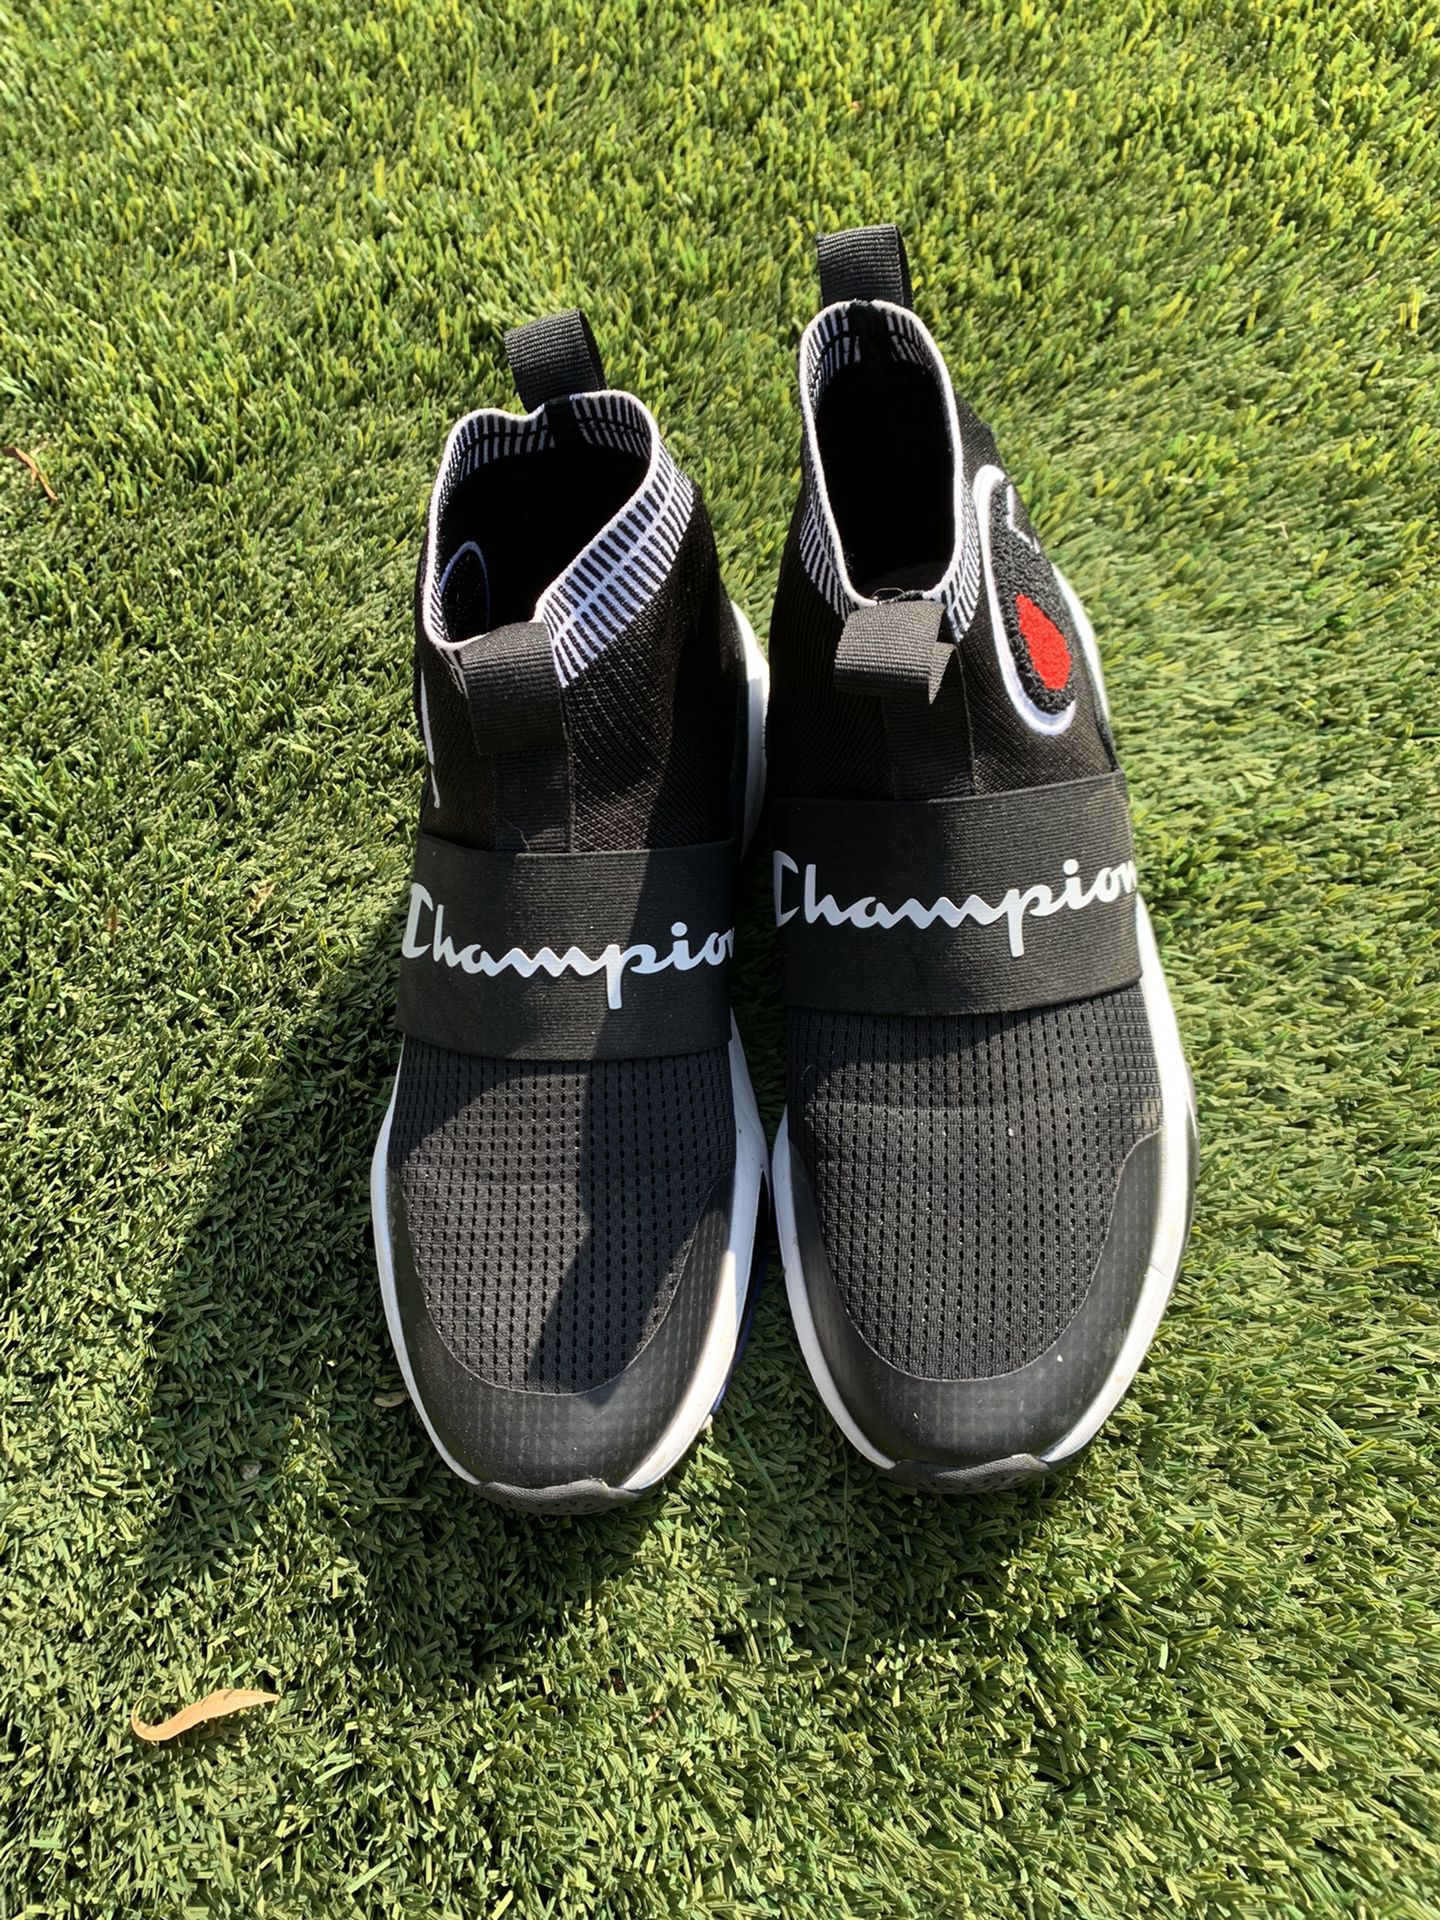 Men’s 9.5 Champion Shoes